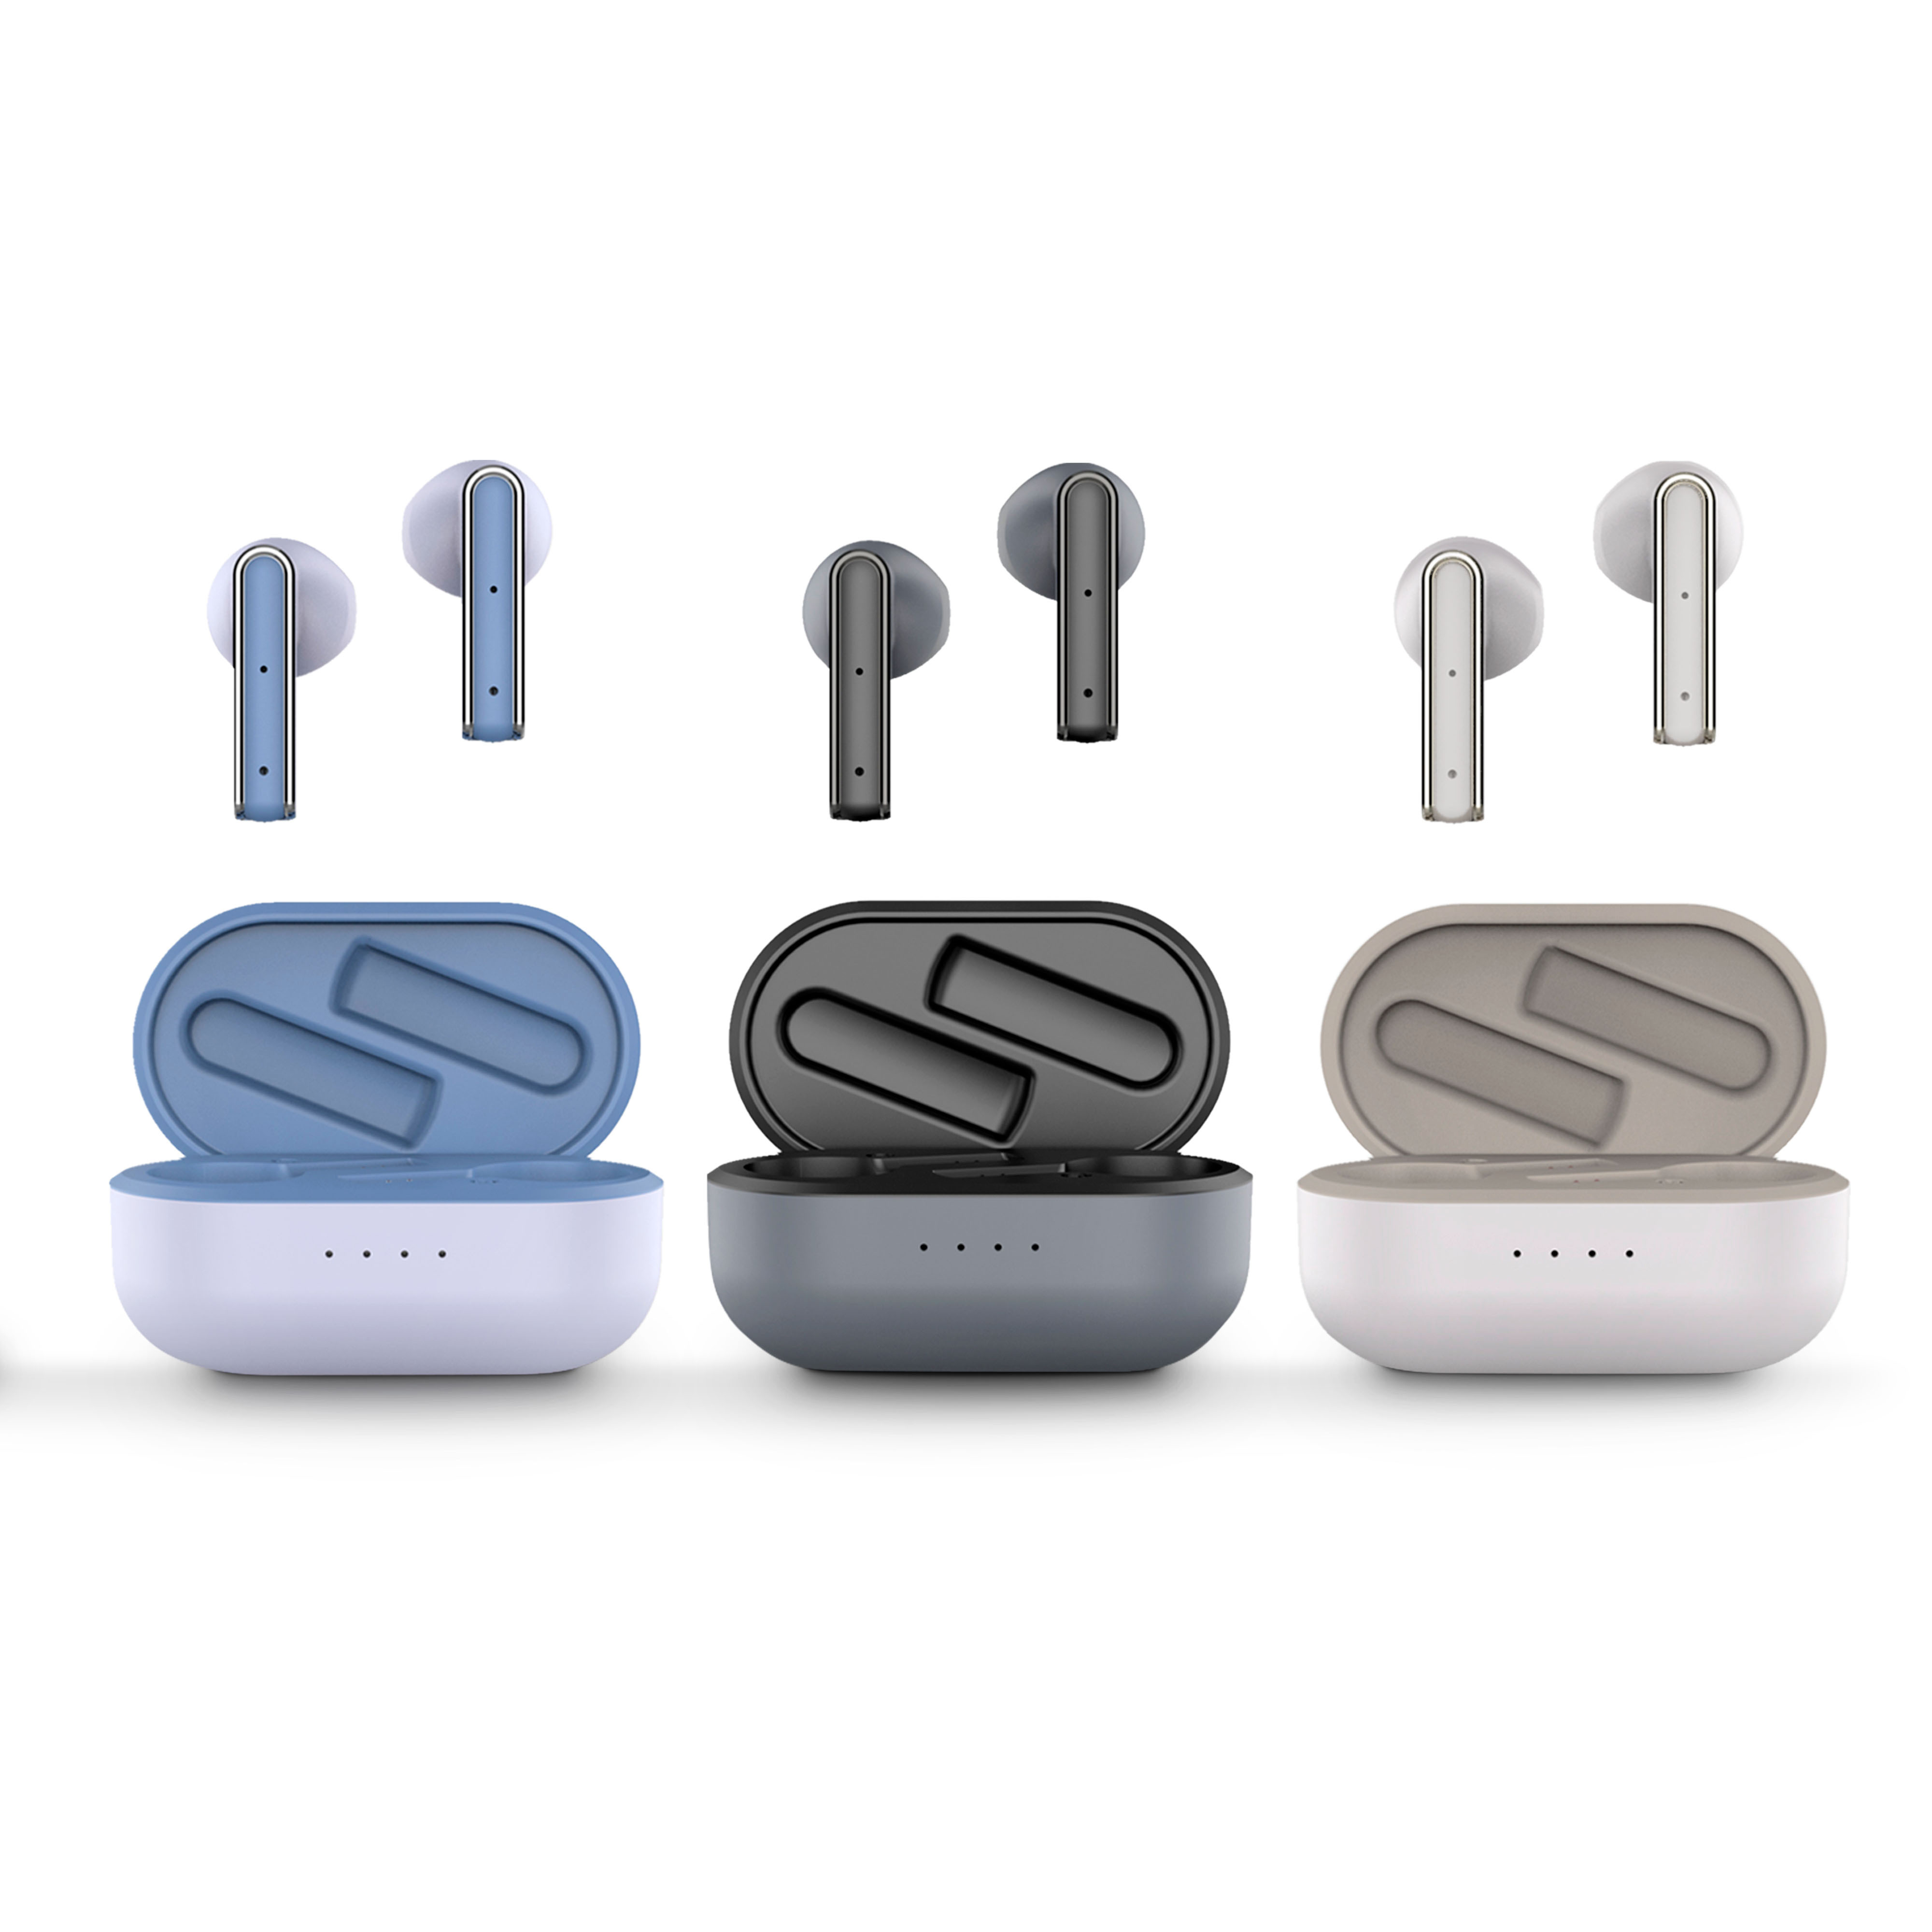 In 4 Farben erhältliche Kopfhörer. Wählen Sie Ihre Farbe!